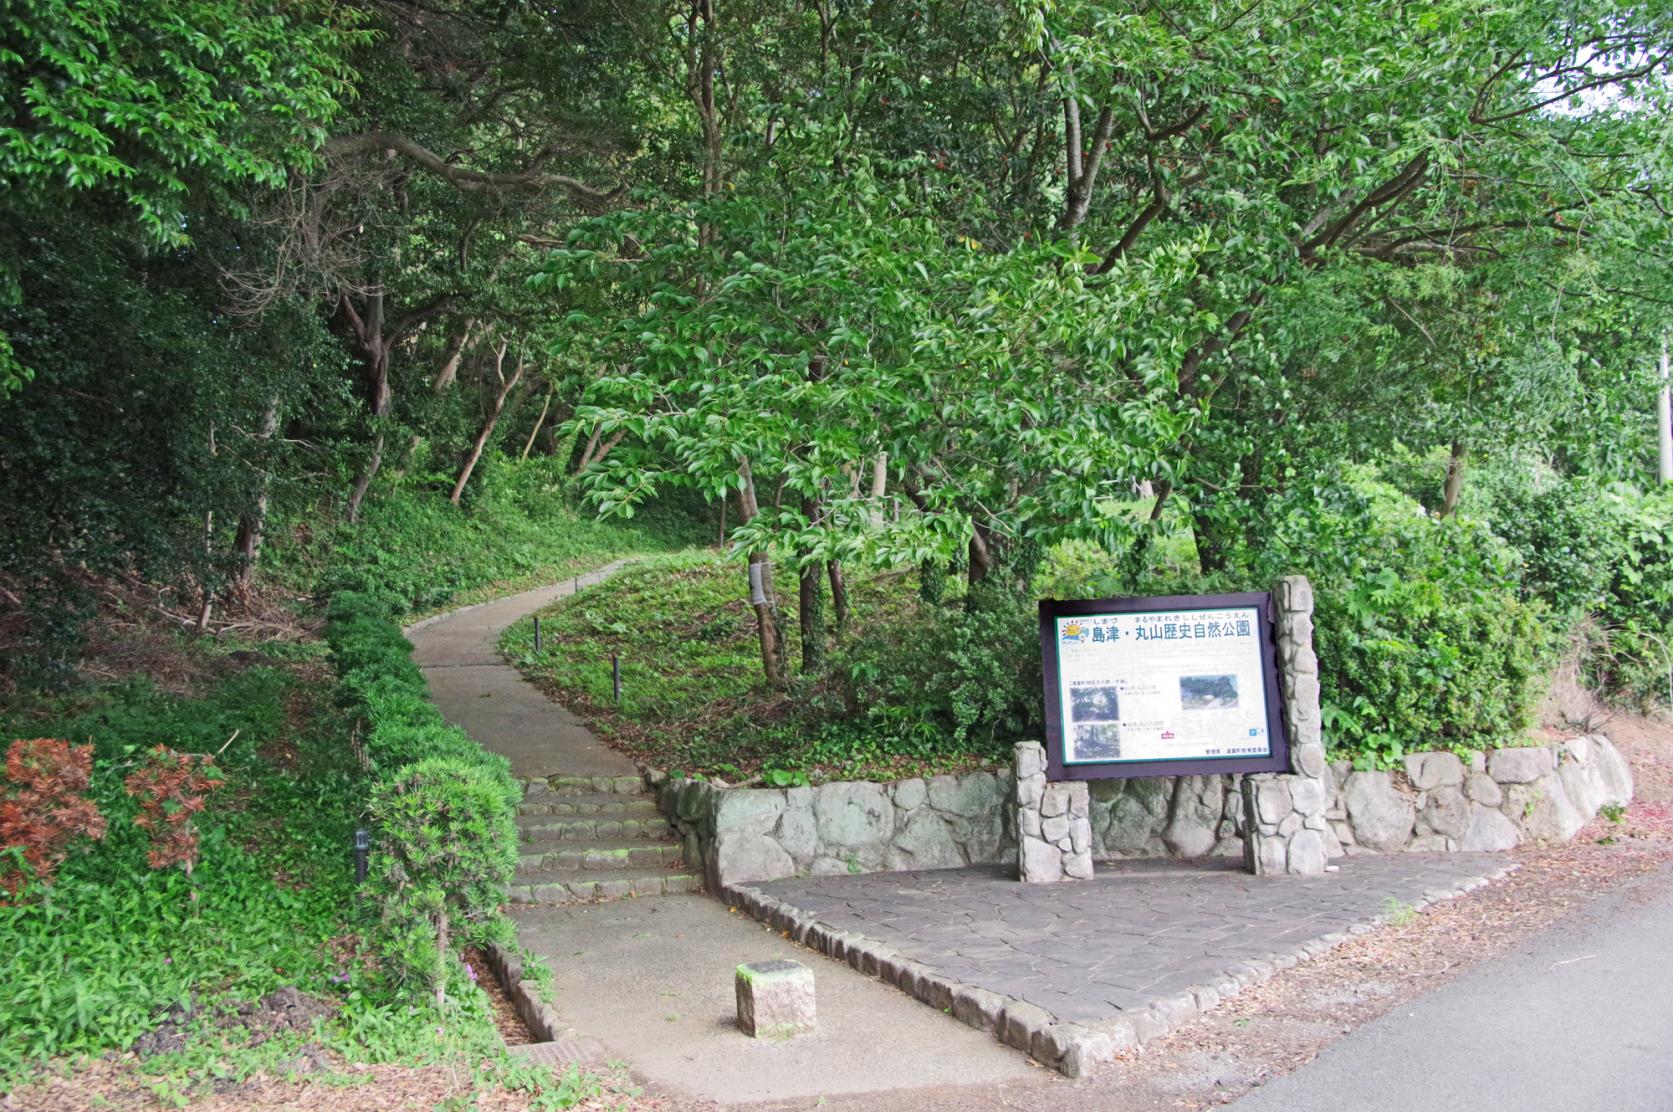 远贺町 岛津、丸山历史自然公园-1